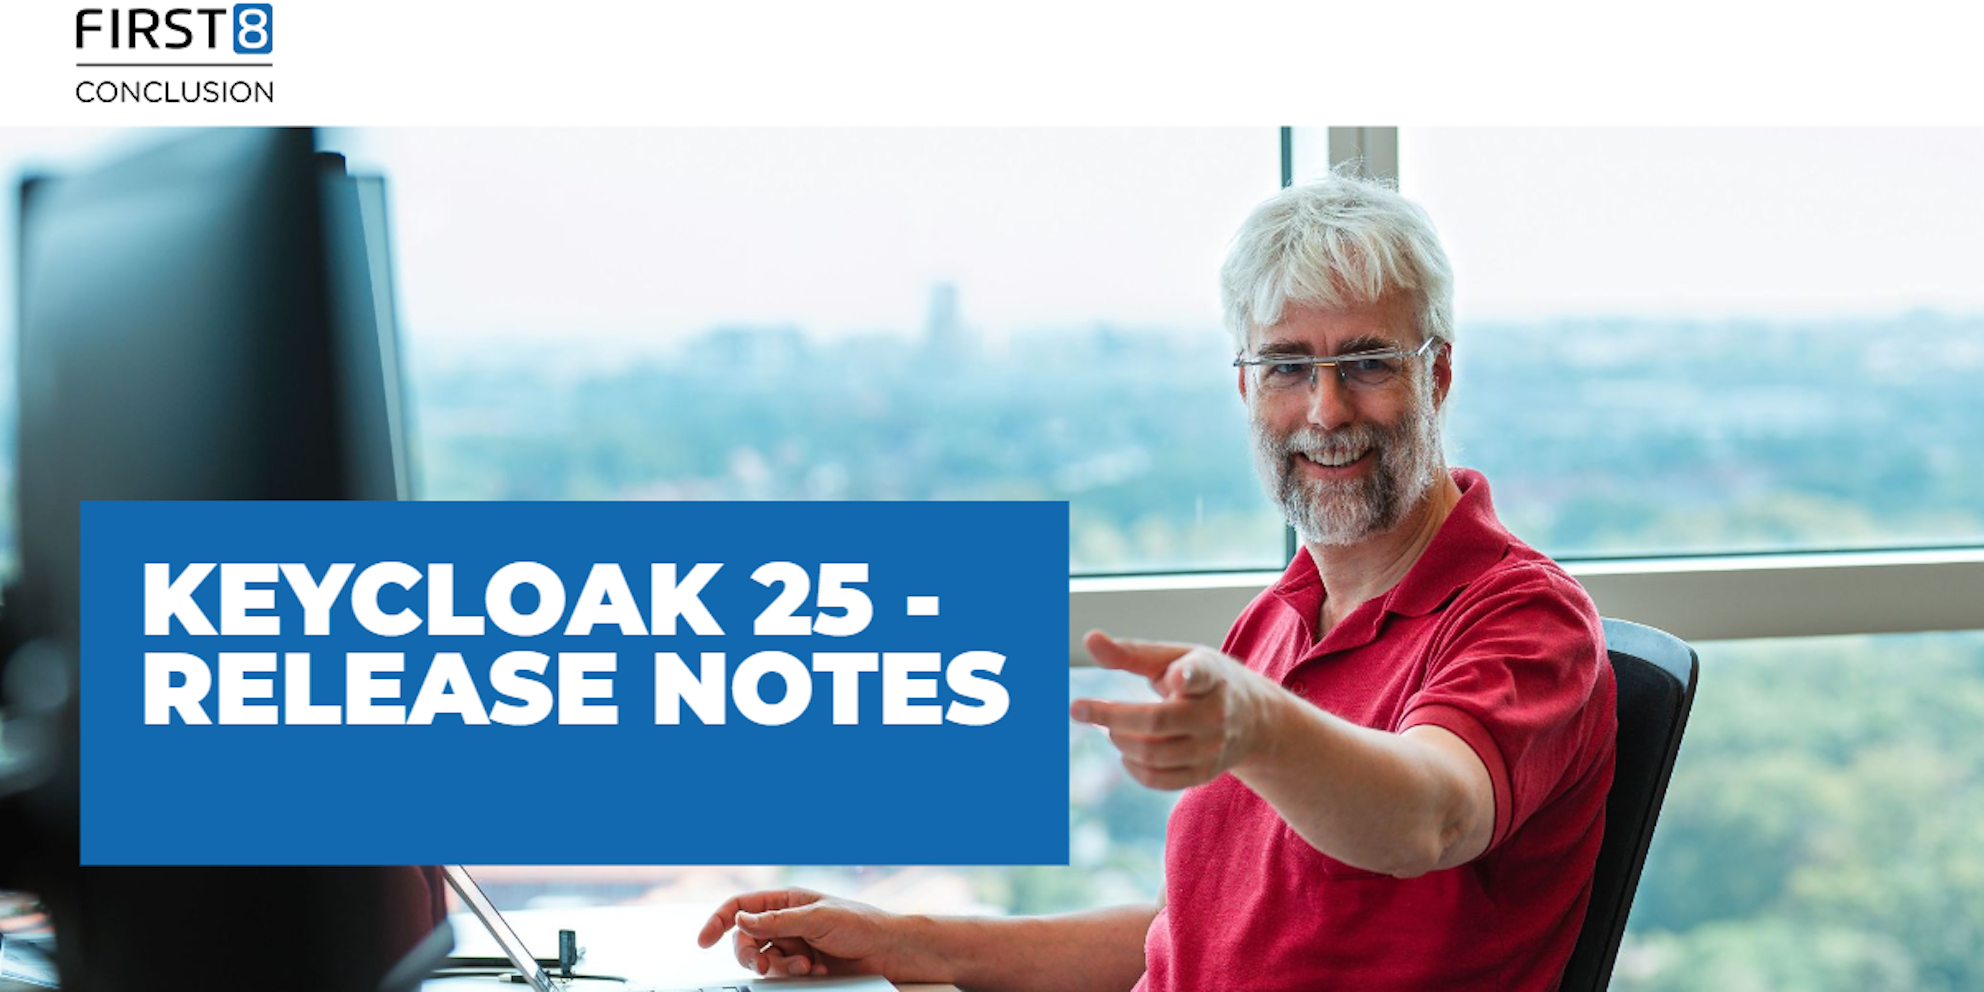 Keycloak 25 - Release Notes